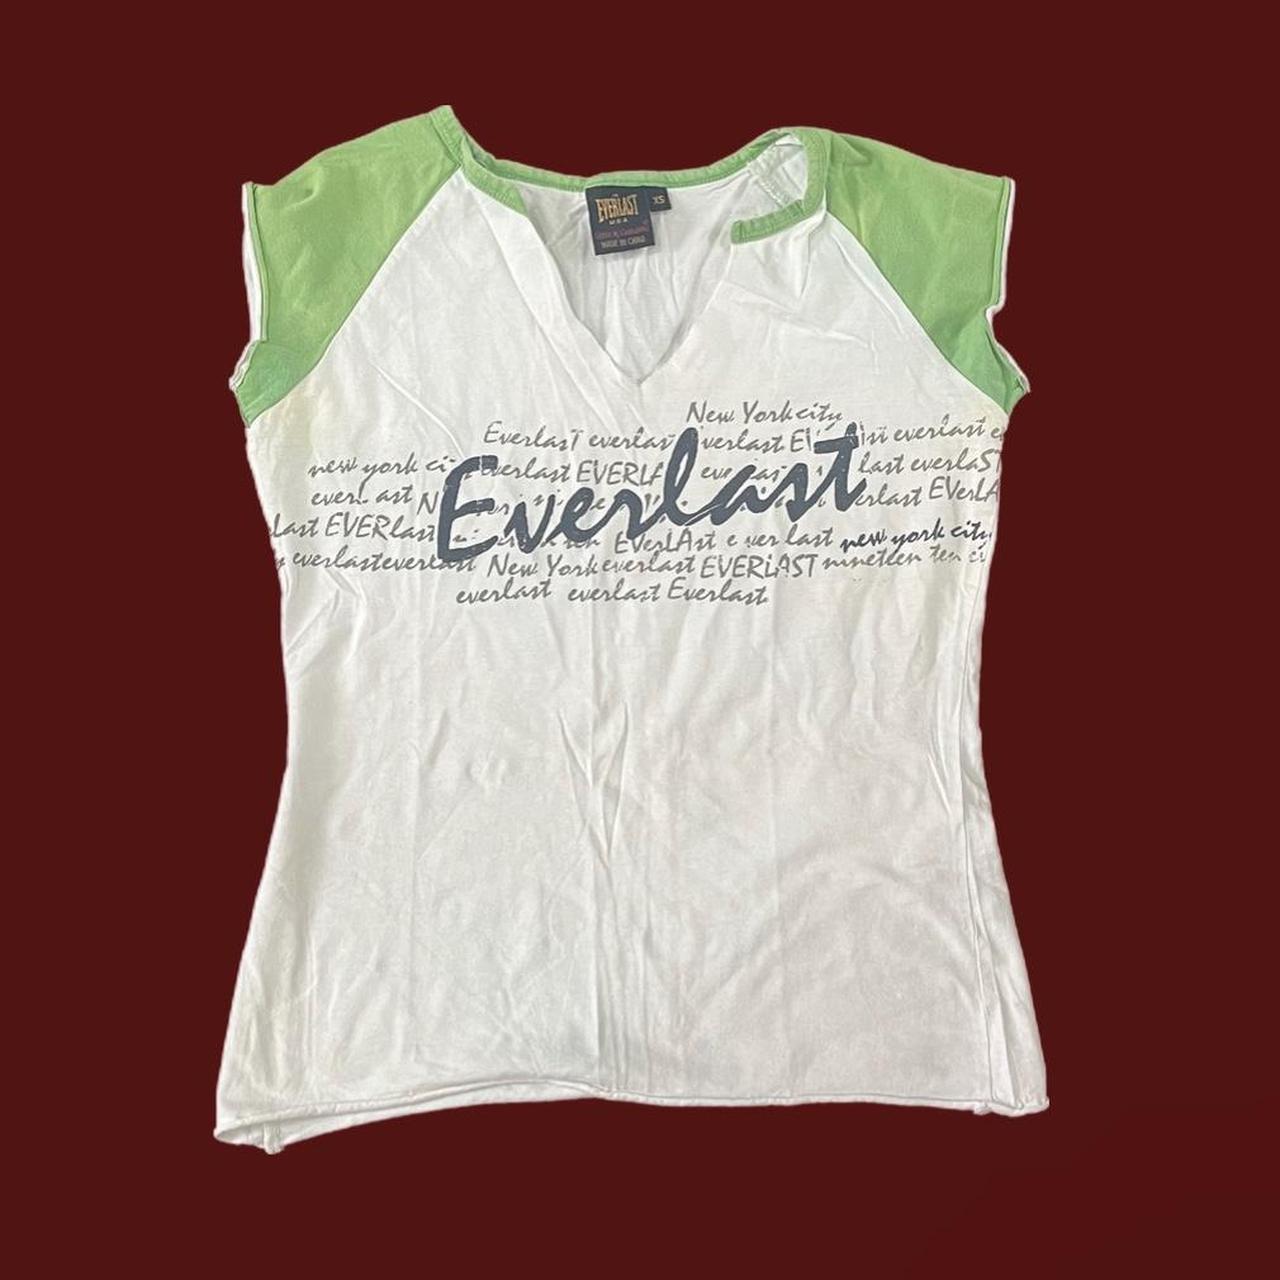 Everlast Women's White and Green T-shirt